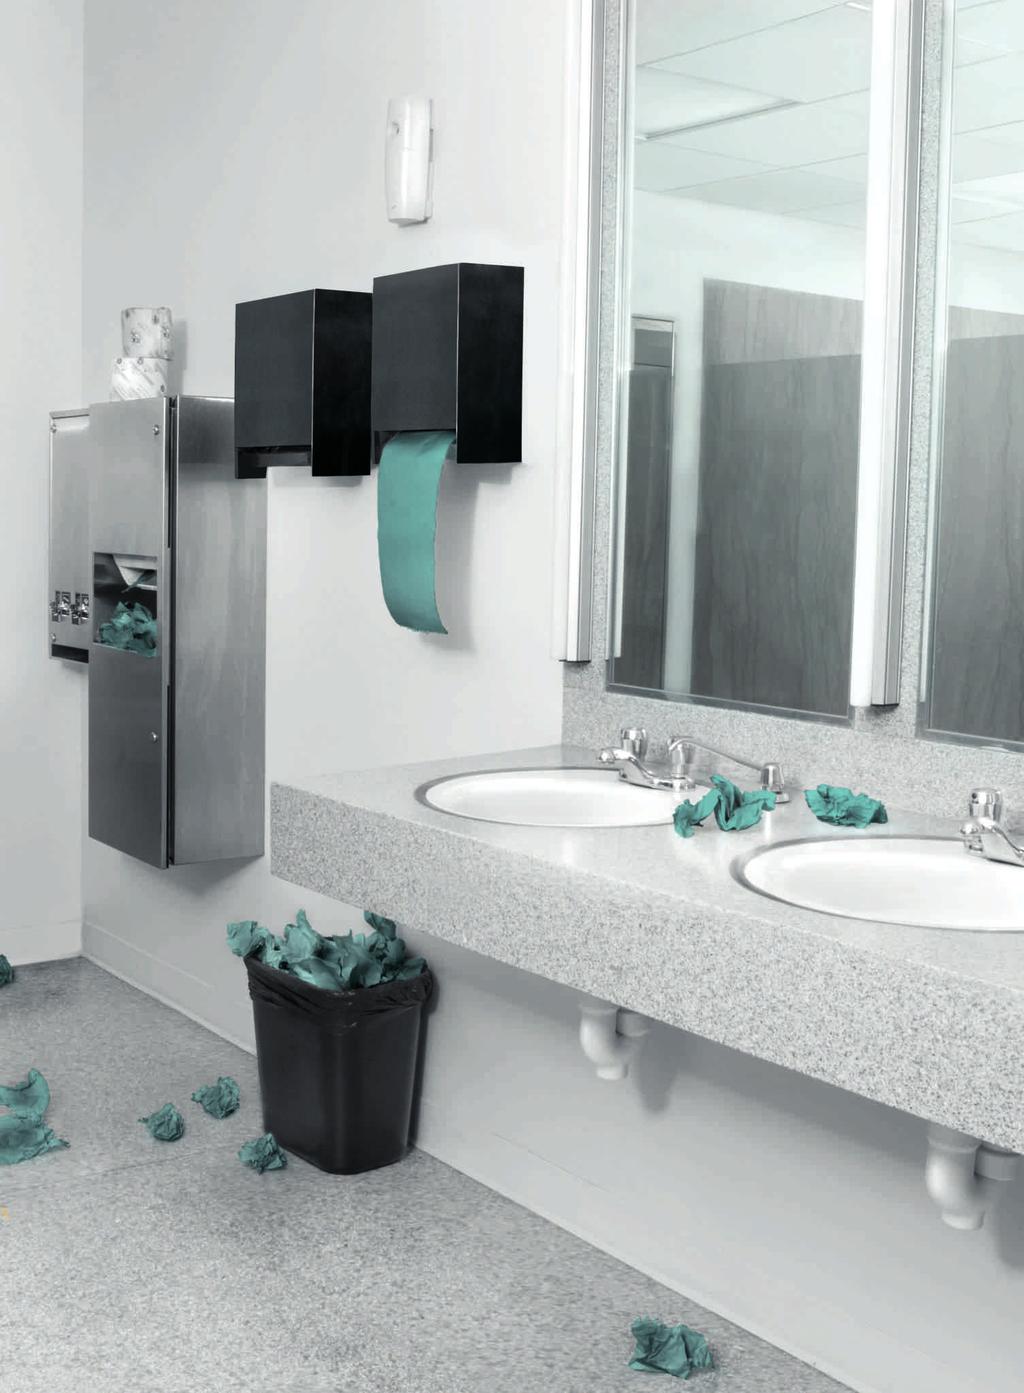 Koska paperitelineet ovat monesti tyhjiä mikä tekee käsien kuivaamisesta mahdotonta paperipyyhkeet voivat myös aiheuttaa hygieniaongelmia vielä WC-tilan ulkopuolella. Tiesitkö?